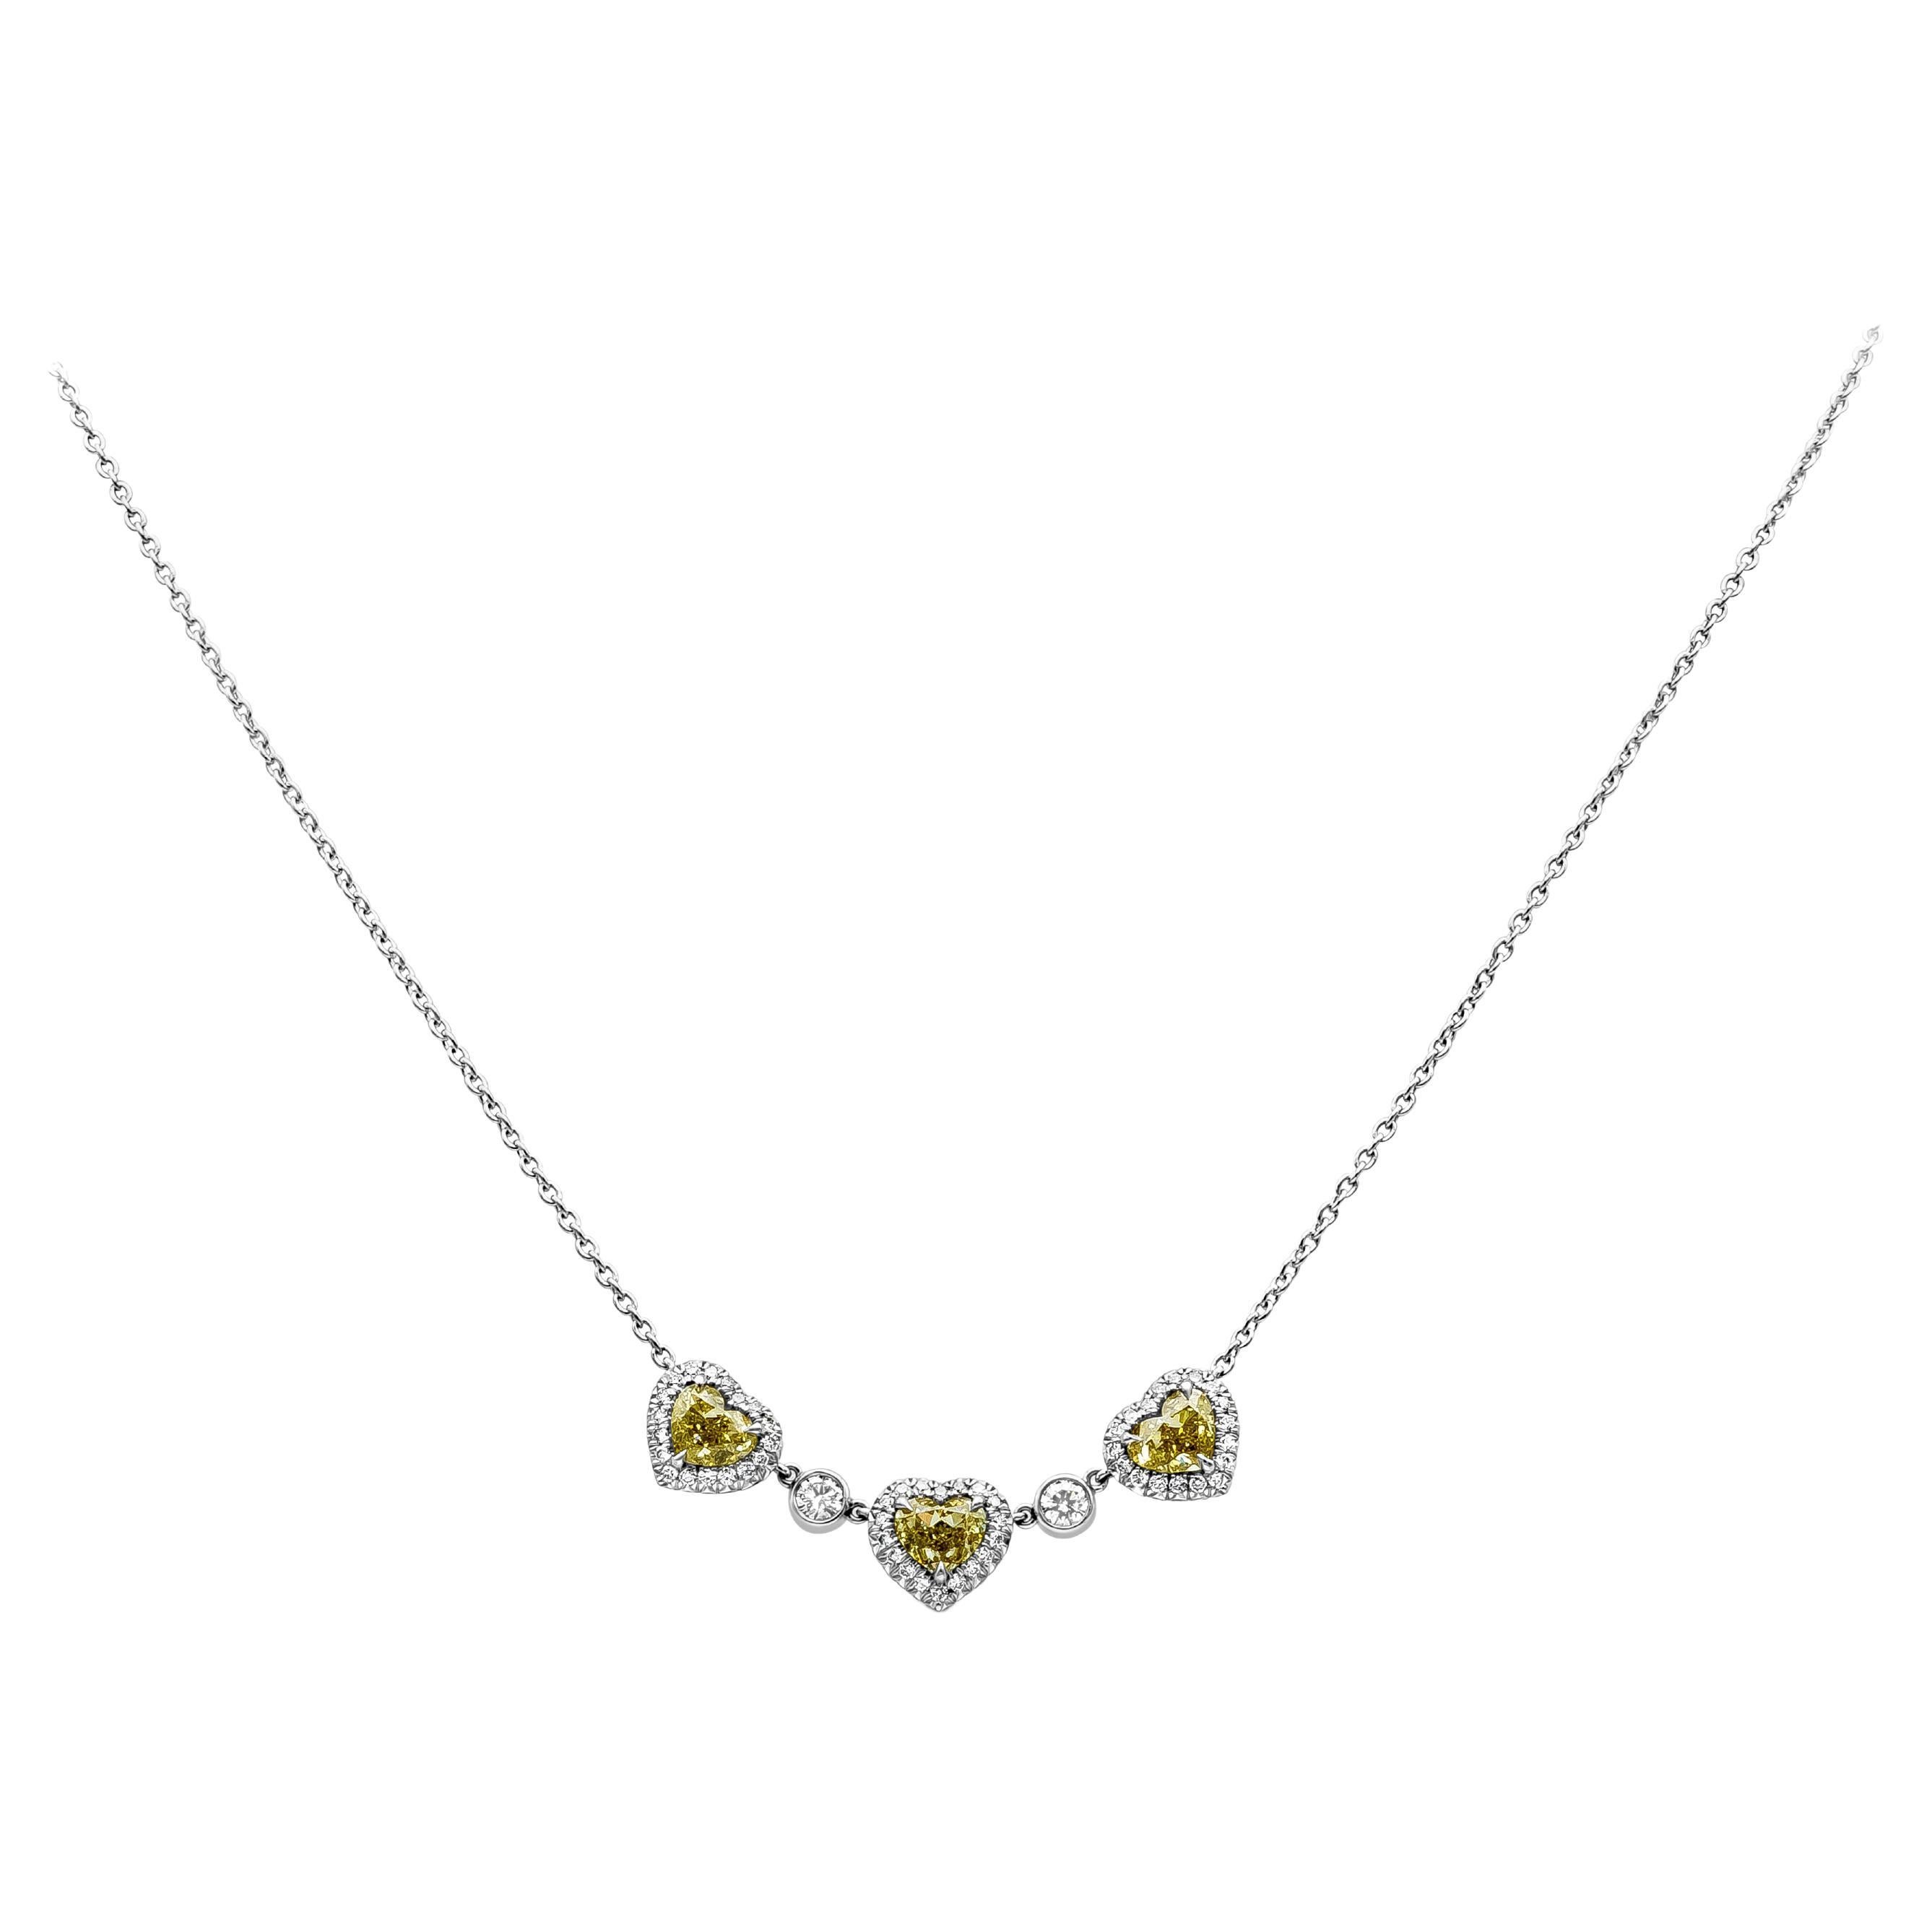 Roman Malakov, collier pendentif en forme de cœur avec trois pierres de 1,74 carat au total